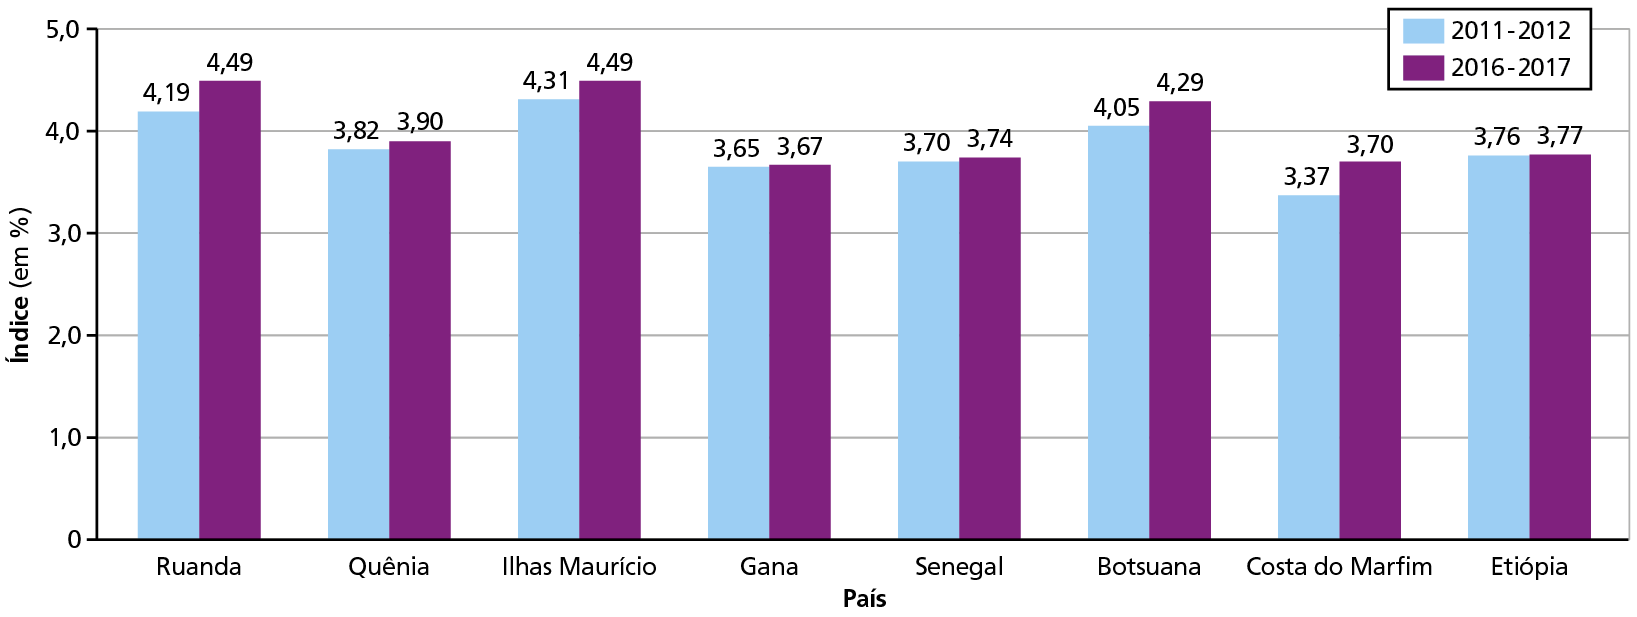 Gráfico. Países africanos: índice de competitividade global (de 2011 a 2017)
Gráfico de colunas duplas revelando o índice de competitividade global de países selecionados do continente africano. O eixo vertical demonstra o índice em porcentagem, variando de 0 a 5. No eixo horizontal, estão os países selecionados e para cada um deles estão representadas uma barra azul, que indica o período entre 2011 e 2012, e uma barra roxa, que mostra o período entre 2016 e 2017. 
Ruanda. Entre 2011 e 2012: 4,19 por cento. Entre 2016 e 2017: 4,49 por cento.
Quênia. Entre 2011 e 2012: 3,82 por cento. Entre 2016 e 2017: 3,90 por cento. 
Ilhas Maurício. Entre 2011 e 2012: 4,31 por cento. Entre 2016 e 2017: 4,49 por cento. 
Gana. Entre 2011 e 2012: 3,65 por cento. Entre 2016 e 2017: 3,67 por cento. 
Senegal. Entre 2011 e 2012: 3,70 por cento.  Entre 2016 e 2017: 3,74 por cento. 
Botsuana. Entre 2011 e 2012: 4,05 por cento. Entre 2016 e 2017: 4,29 por cento. 
Costa do Marfim. Entre 2011 e 2012: 3,37 por cento. Entre 2016 e 2017: 3,70 por cento. 
Etiópia. Entre 2011 e 2012: 3,76 por cento. Entre 2016 e 2017: 3,77 por cento.